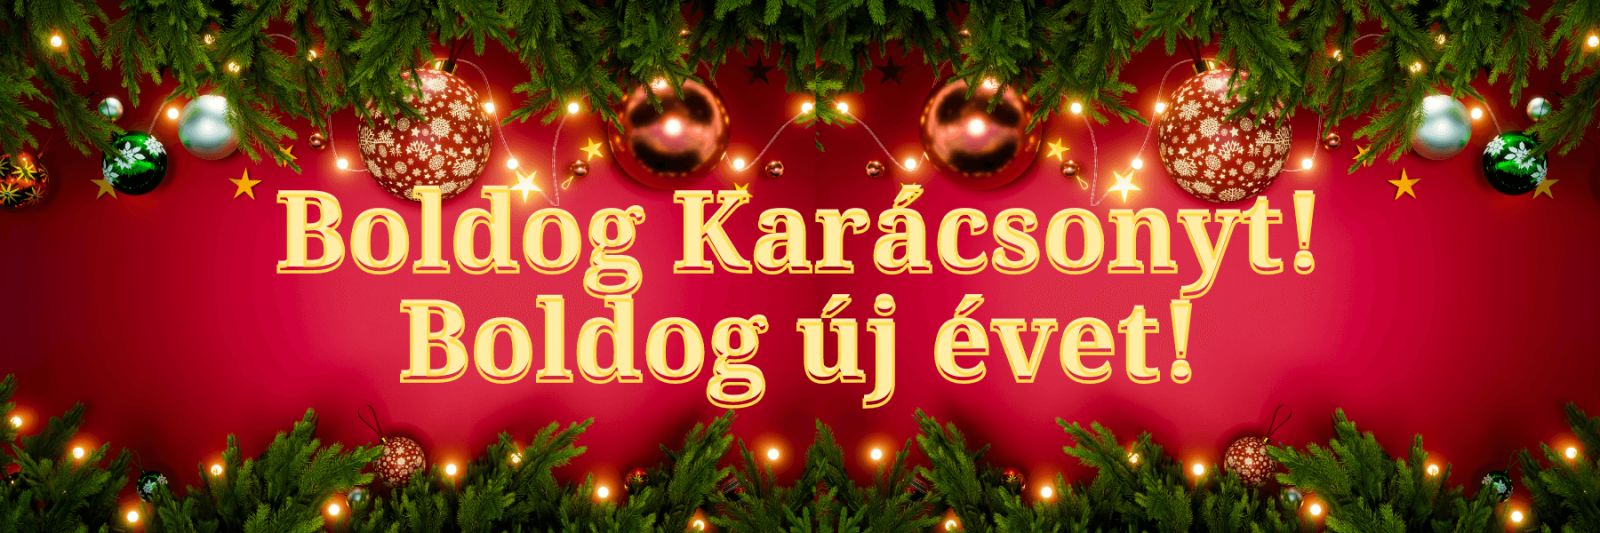 Веселого Рождества и счастливого Нового года! на венгерском языке